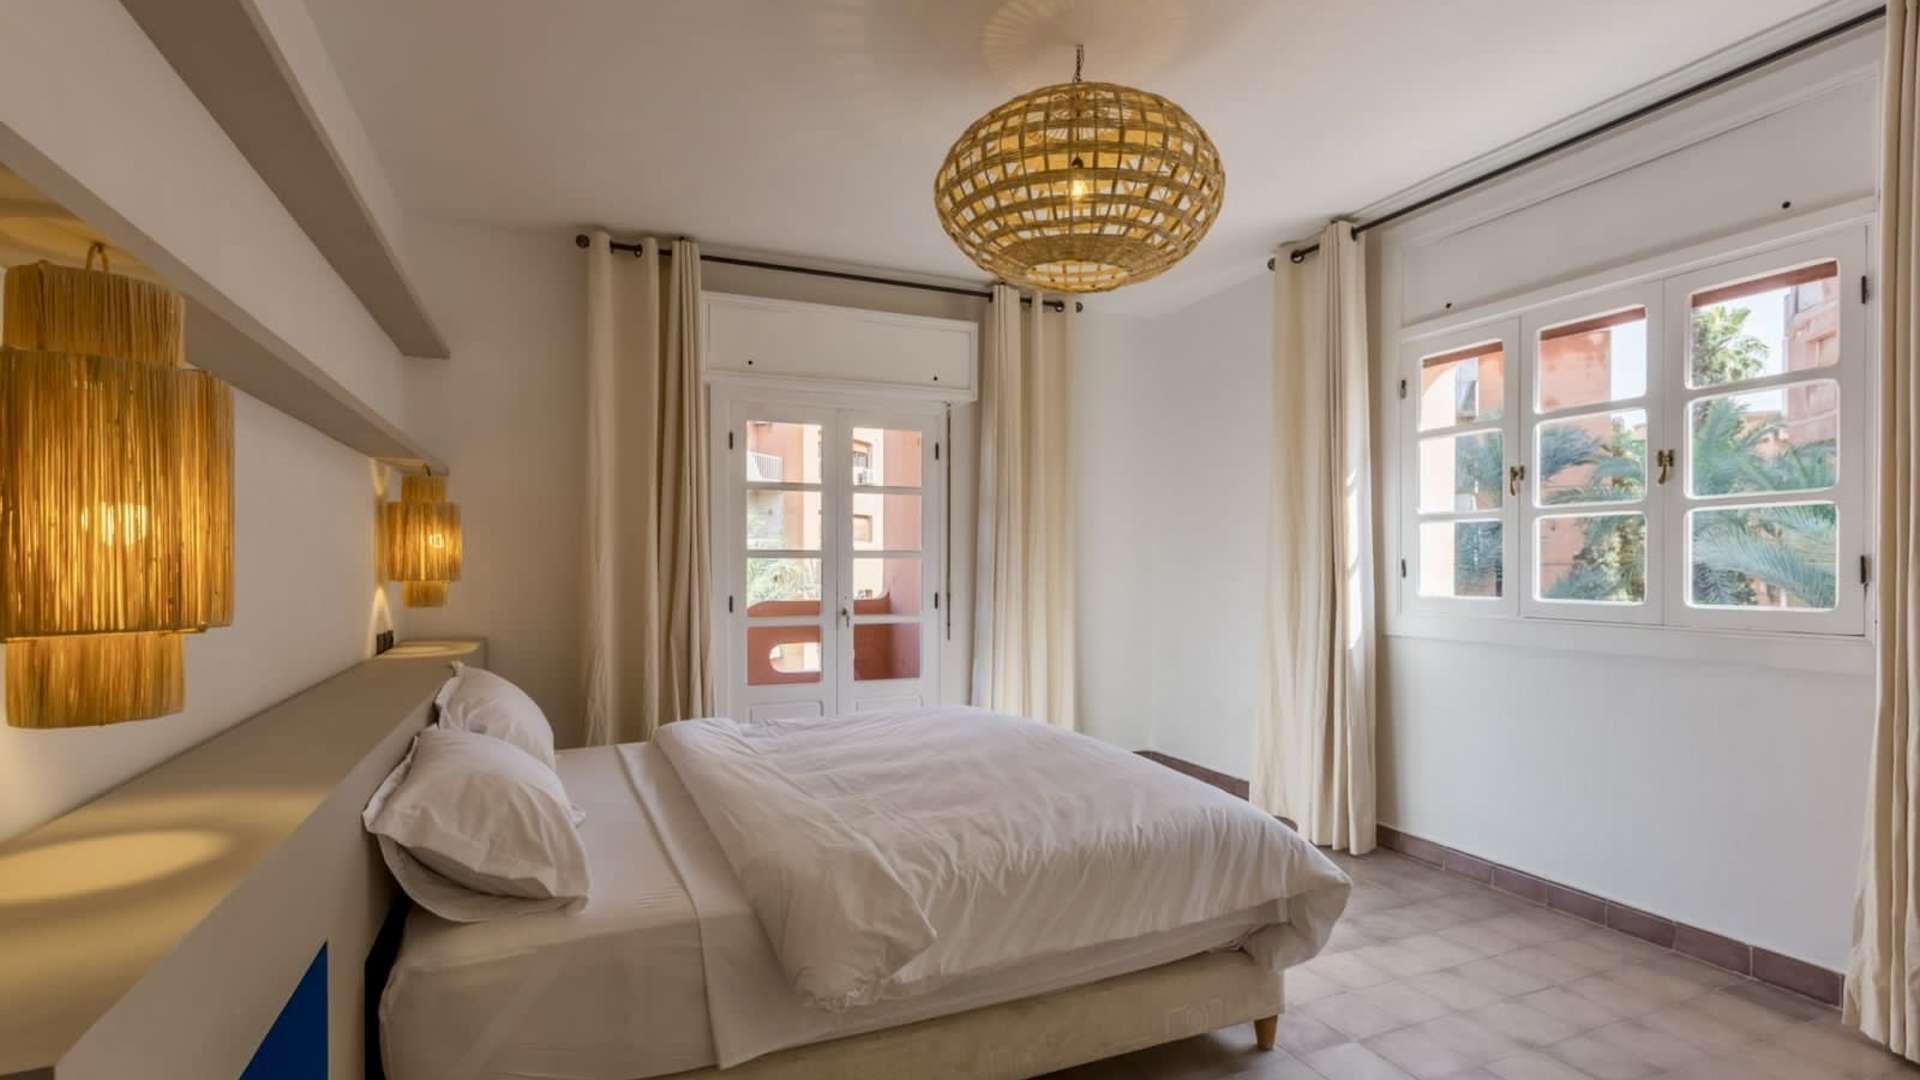 Vente,Appartement,Offre de Vente - Appartement de 3 Chambres Salon à Proximité des Jardins de Majorelles, Marrakech,Marrakech,Majorelles